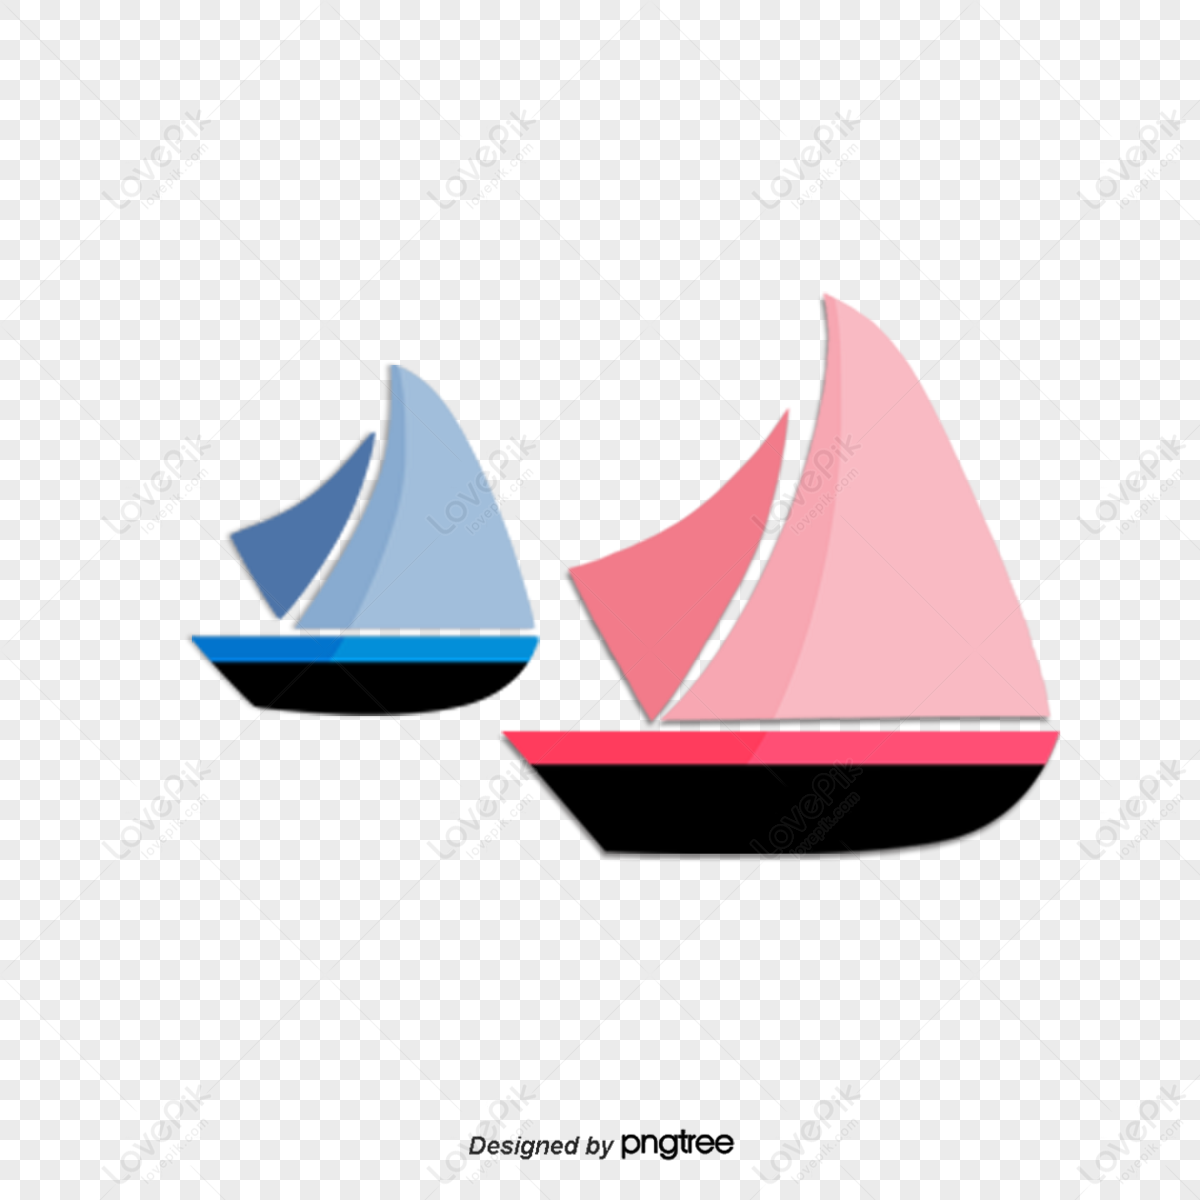 Cartoon grid sailboat,water,yacht,symbol png image